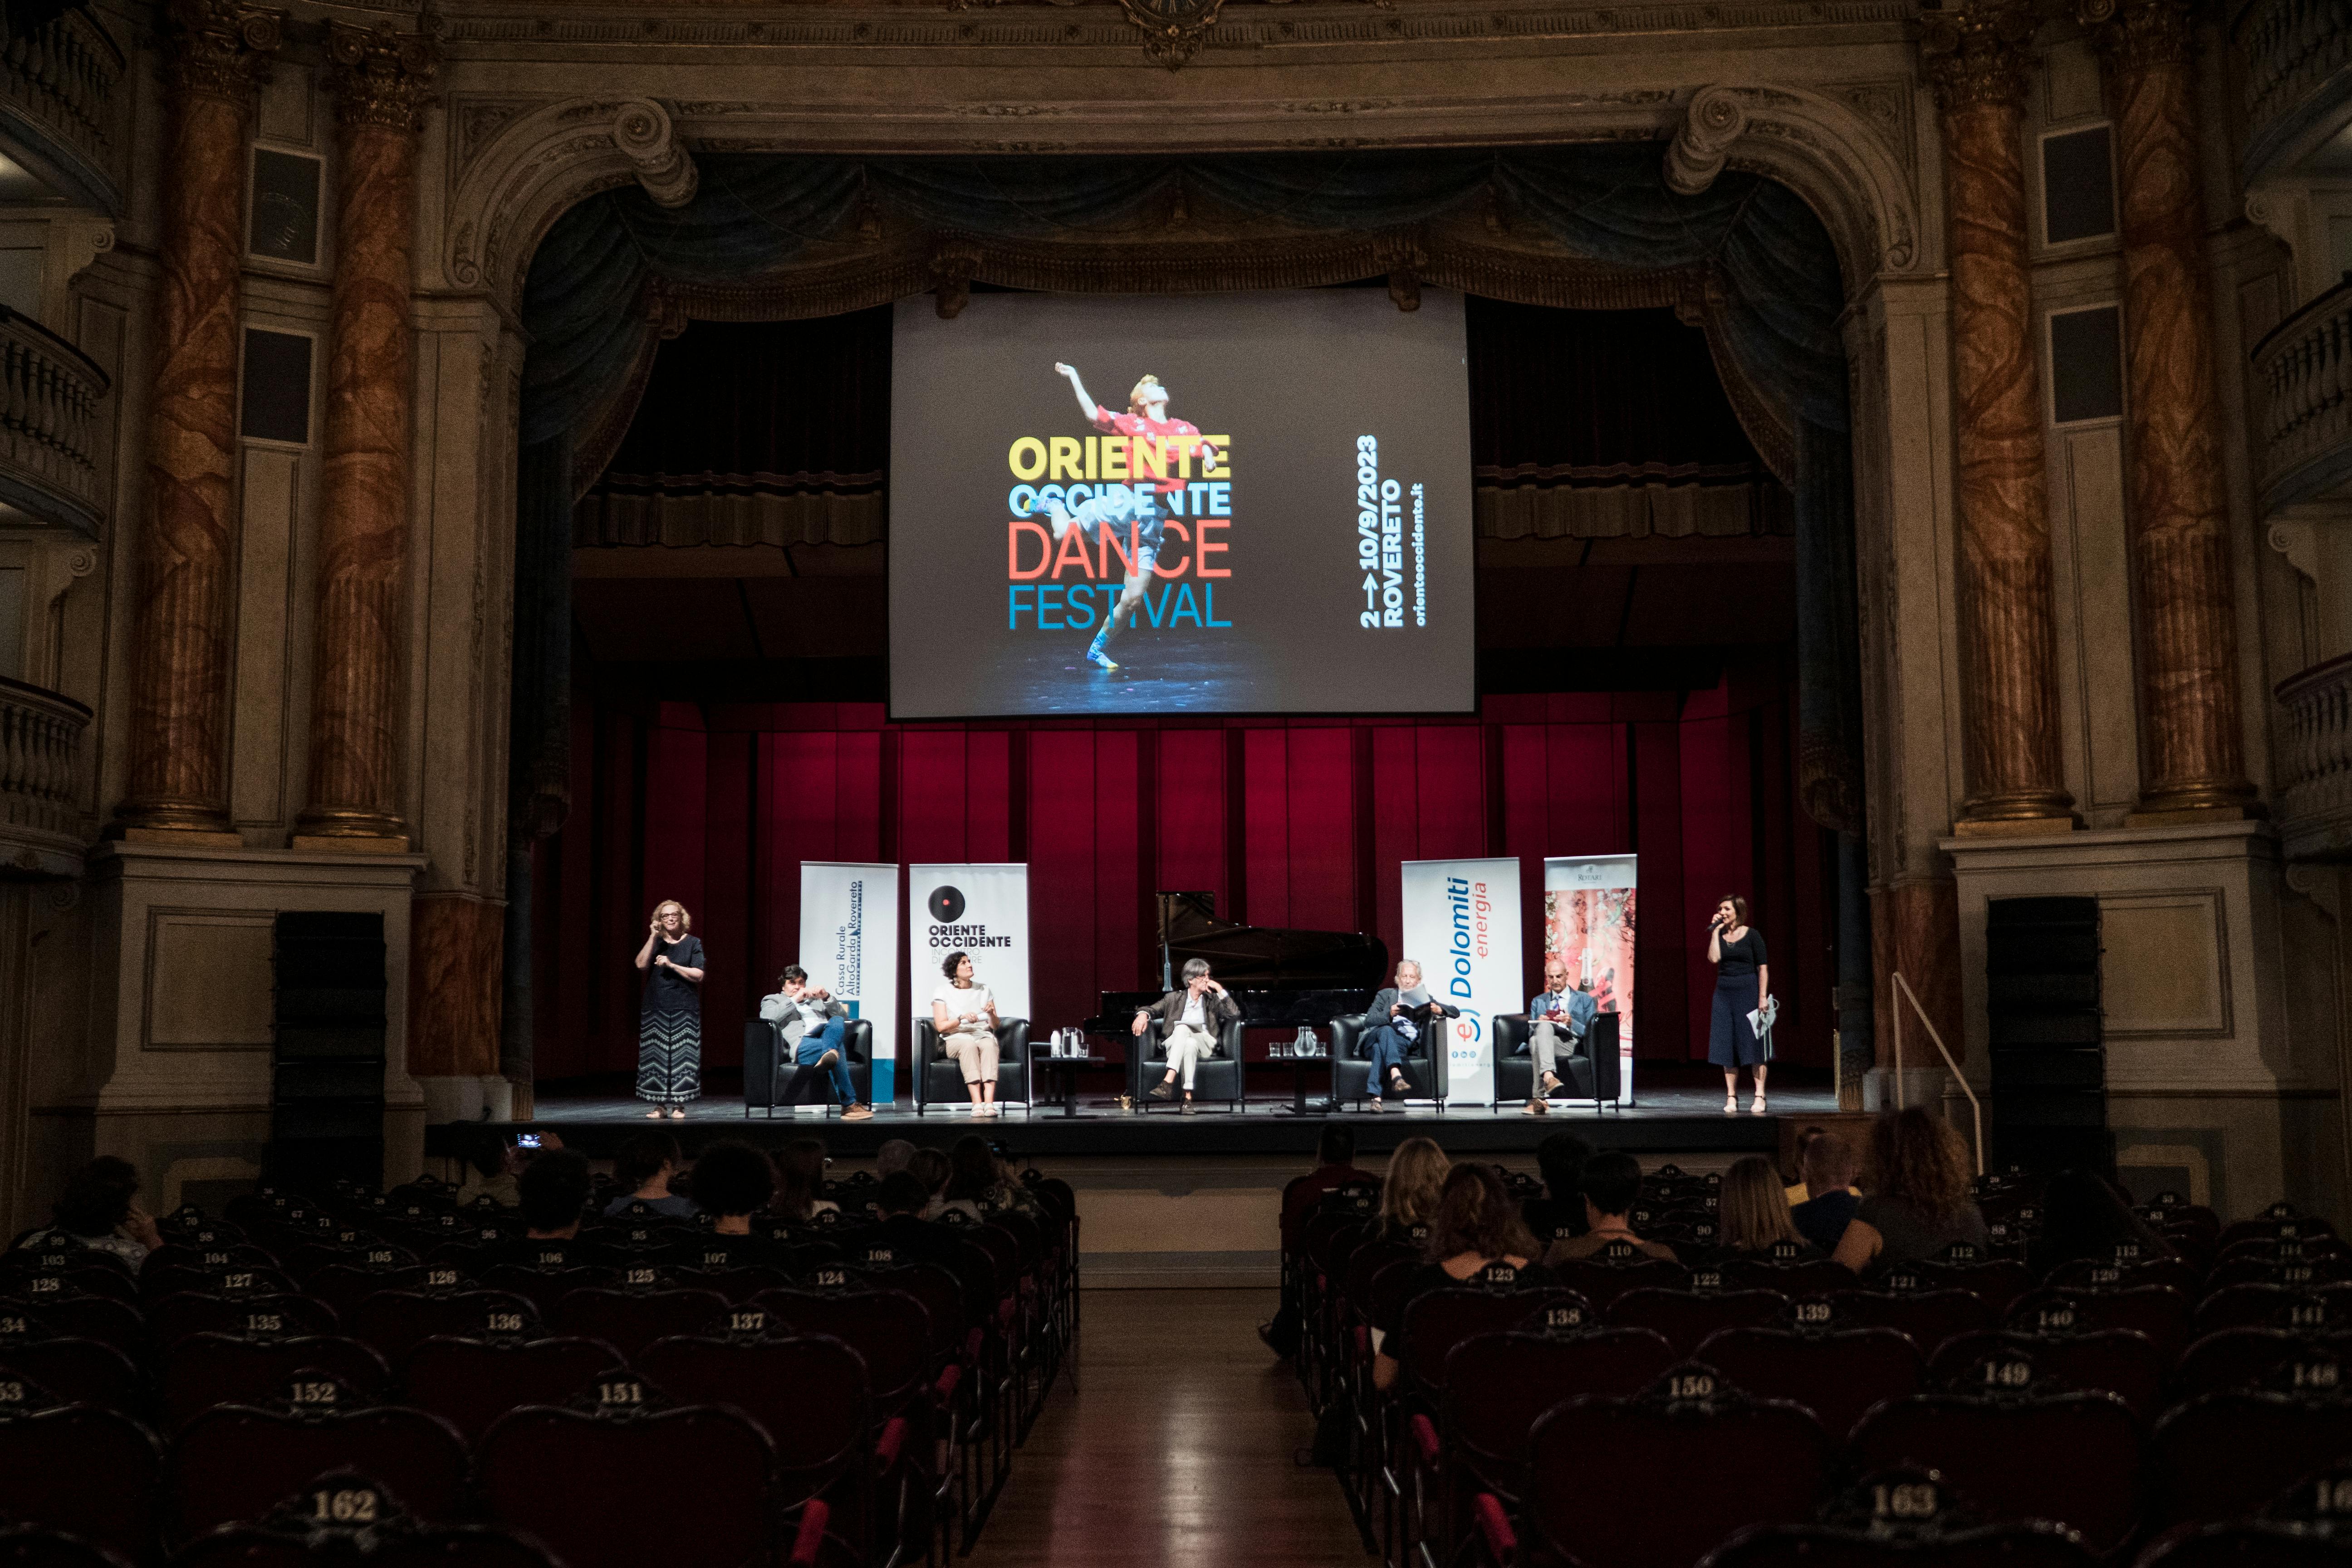 Foto dalla platea del Teatro Zandonai, sul palco sette persone presentano il festival e il programma.